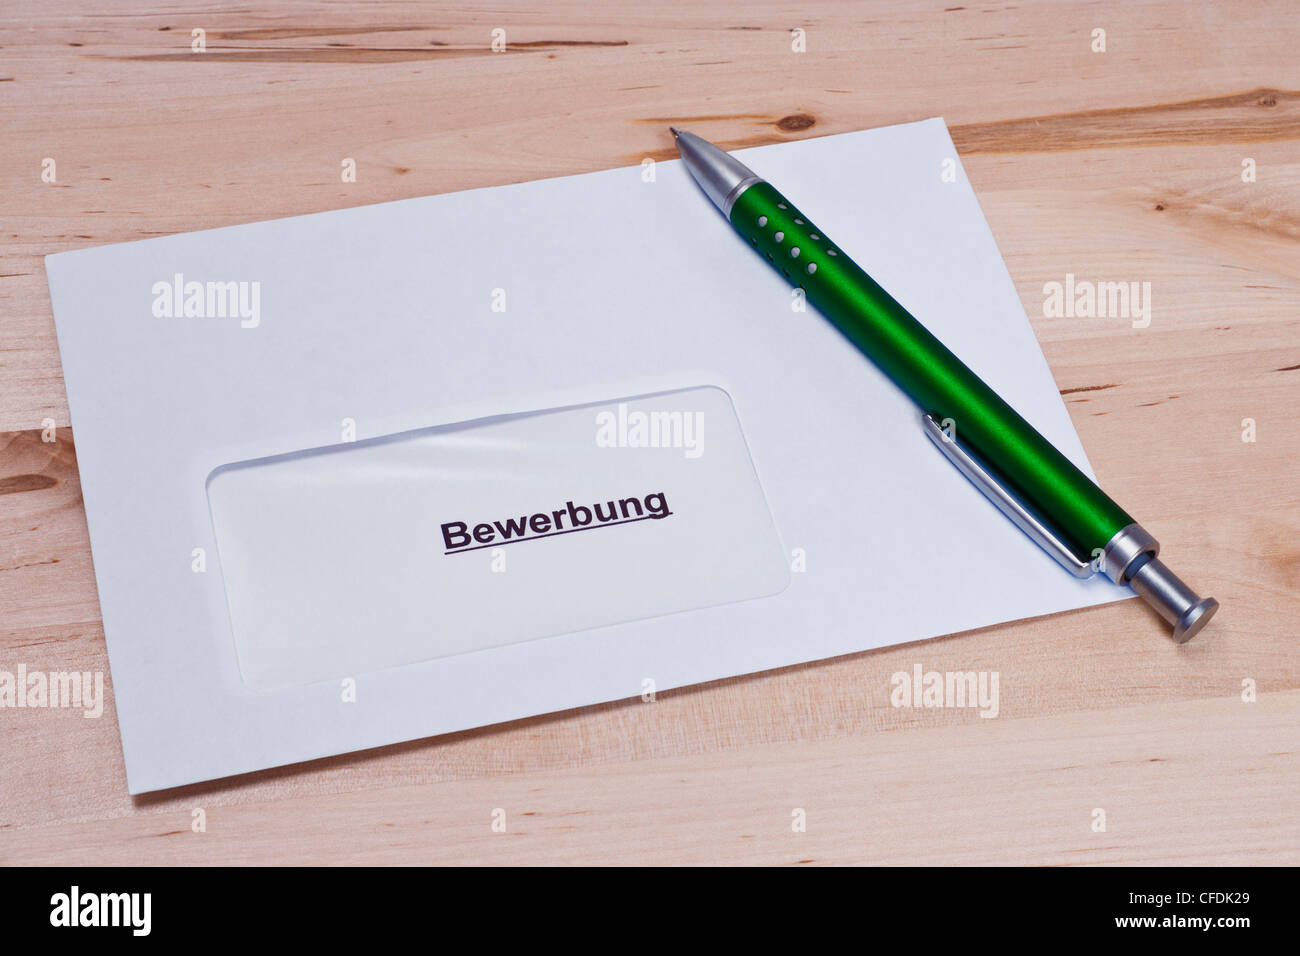 ein Briefumschlag mit einer Bewerbung, ein Stift liegt dabei | a envelope with a letter of application, a pen is alongside Stock Photo